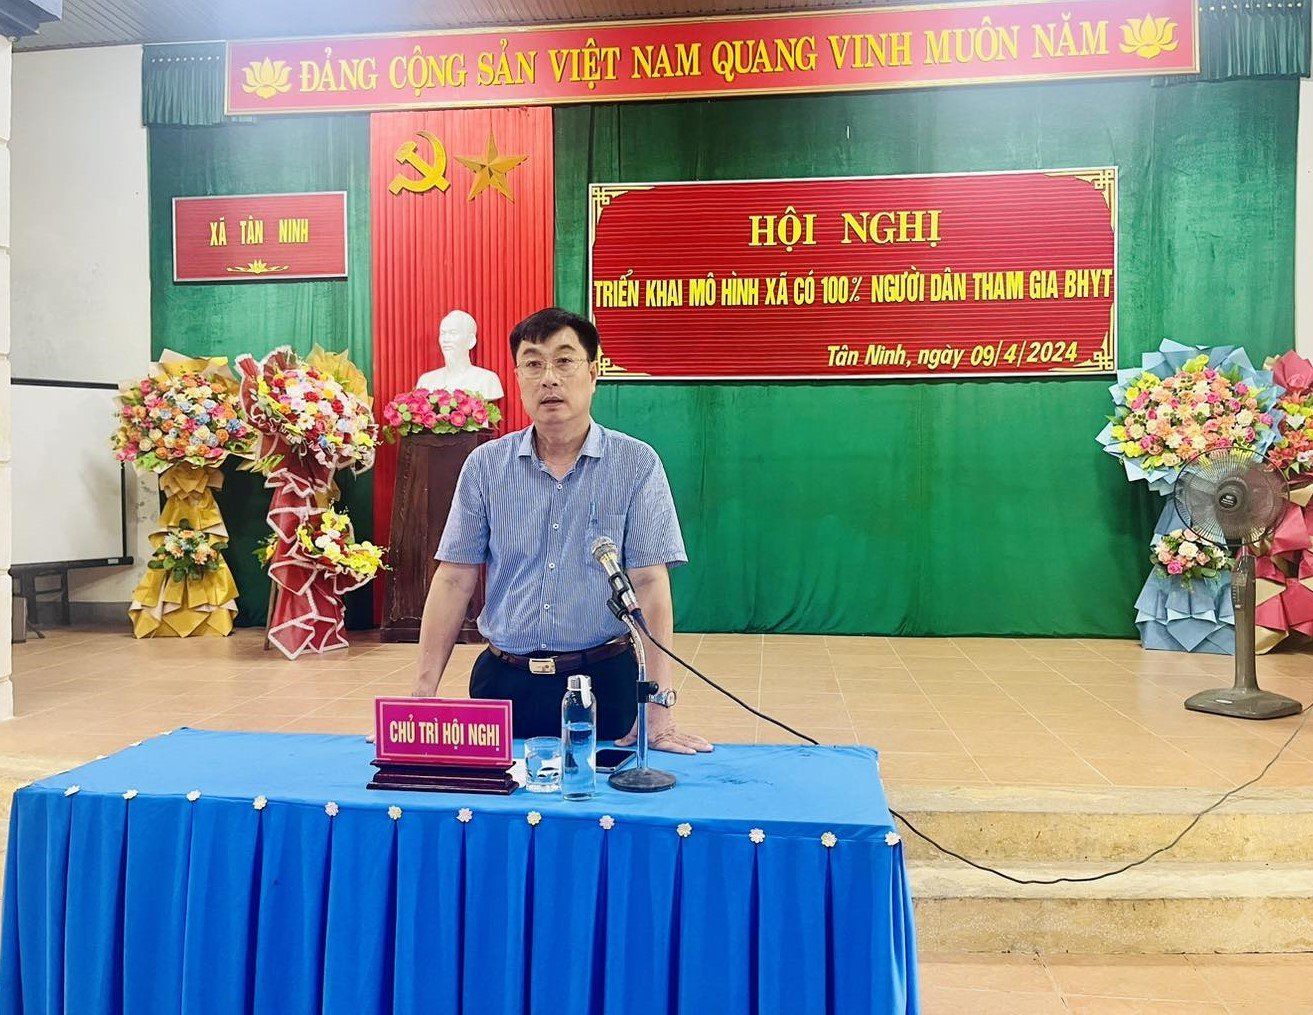 Huyện Quảng Ninh (Quảng Bình): Triển khai mô hình “xã có 100% người dân tham gia BHYT"